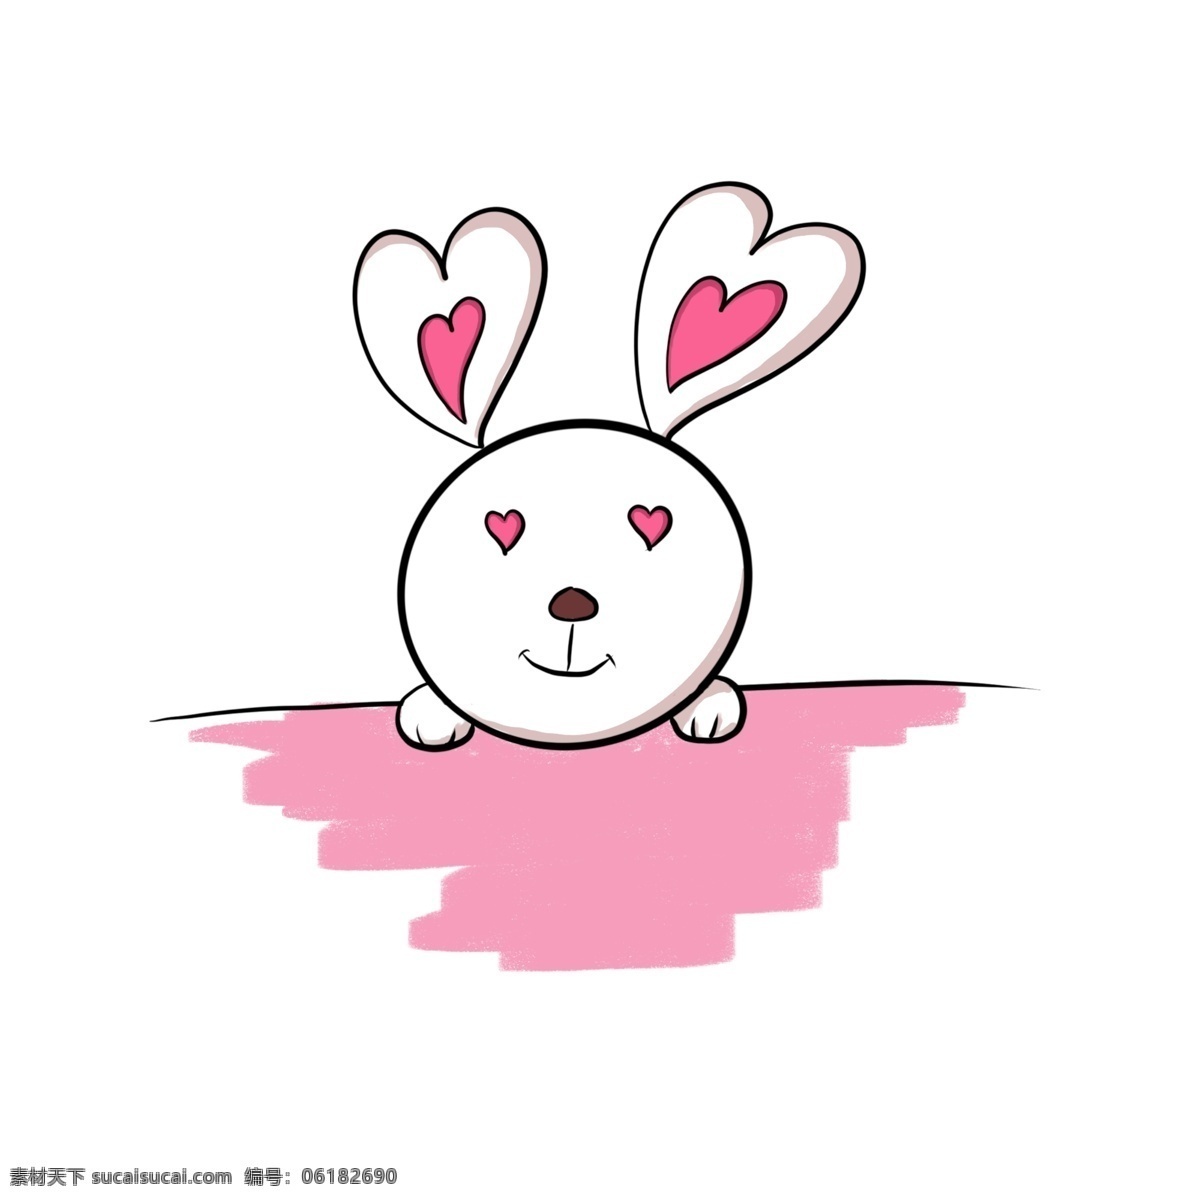 爱心 抱 兔子 红色的爱心 可爱的兔子 心形 卡通爱心 卡通小兔子 粉色的小兔子 立体爱心